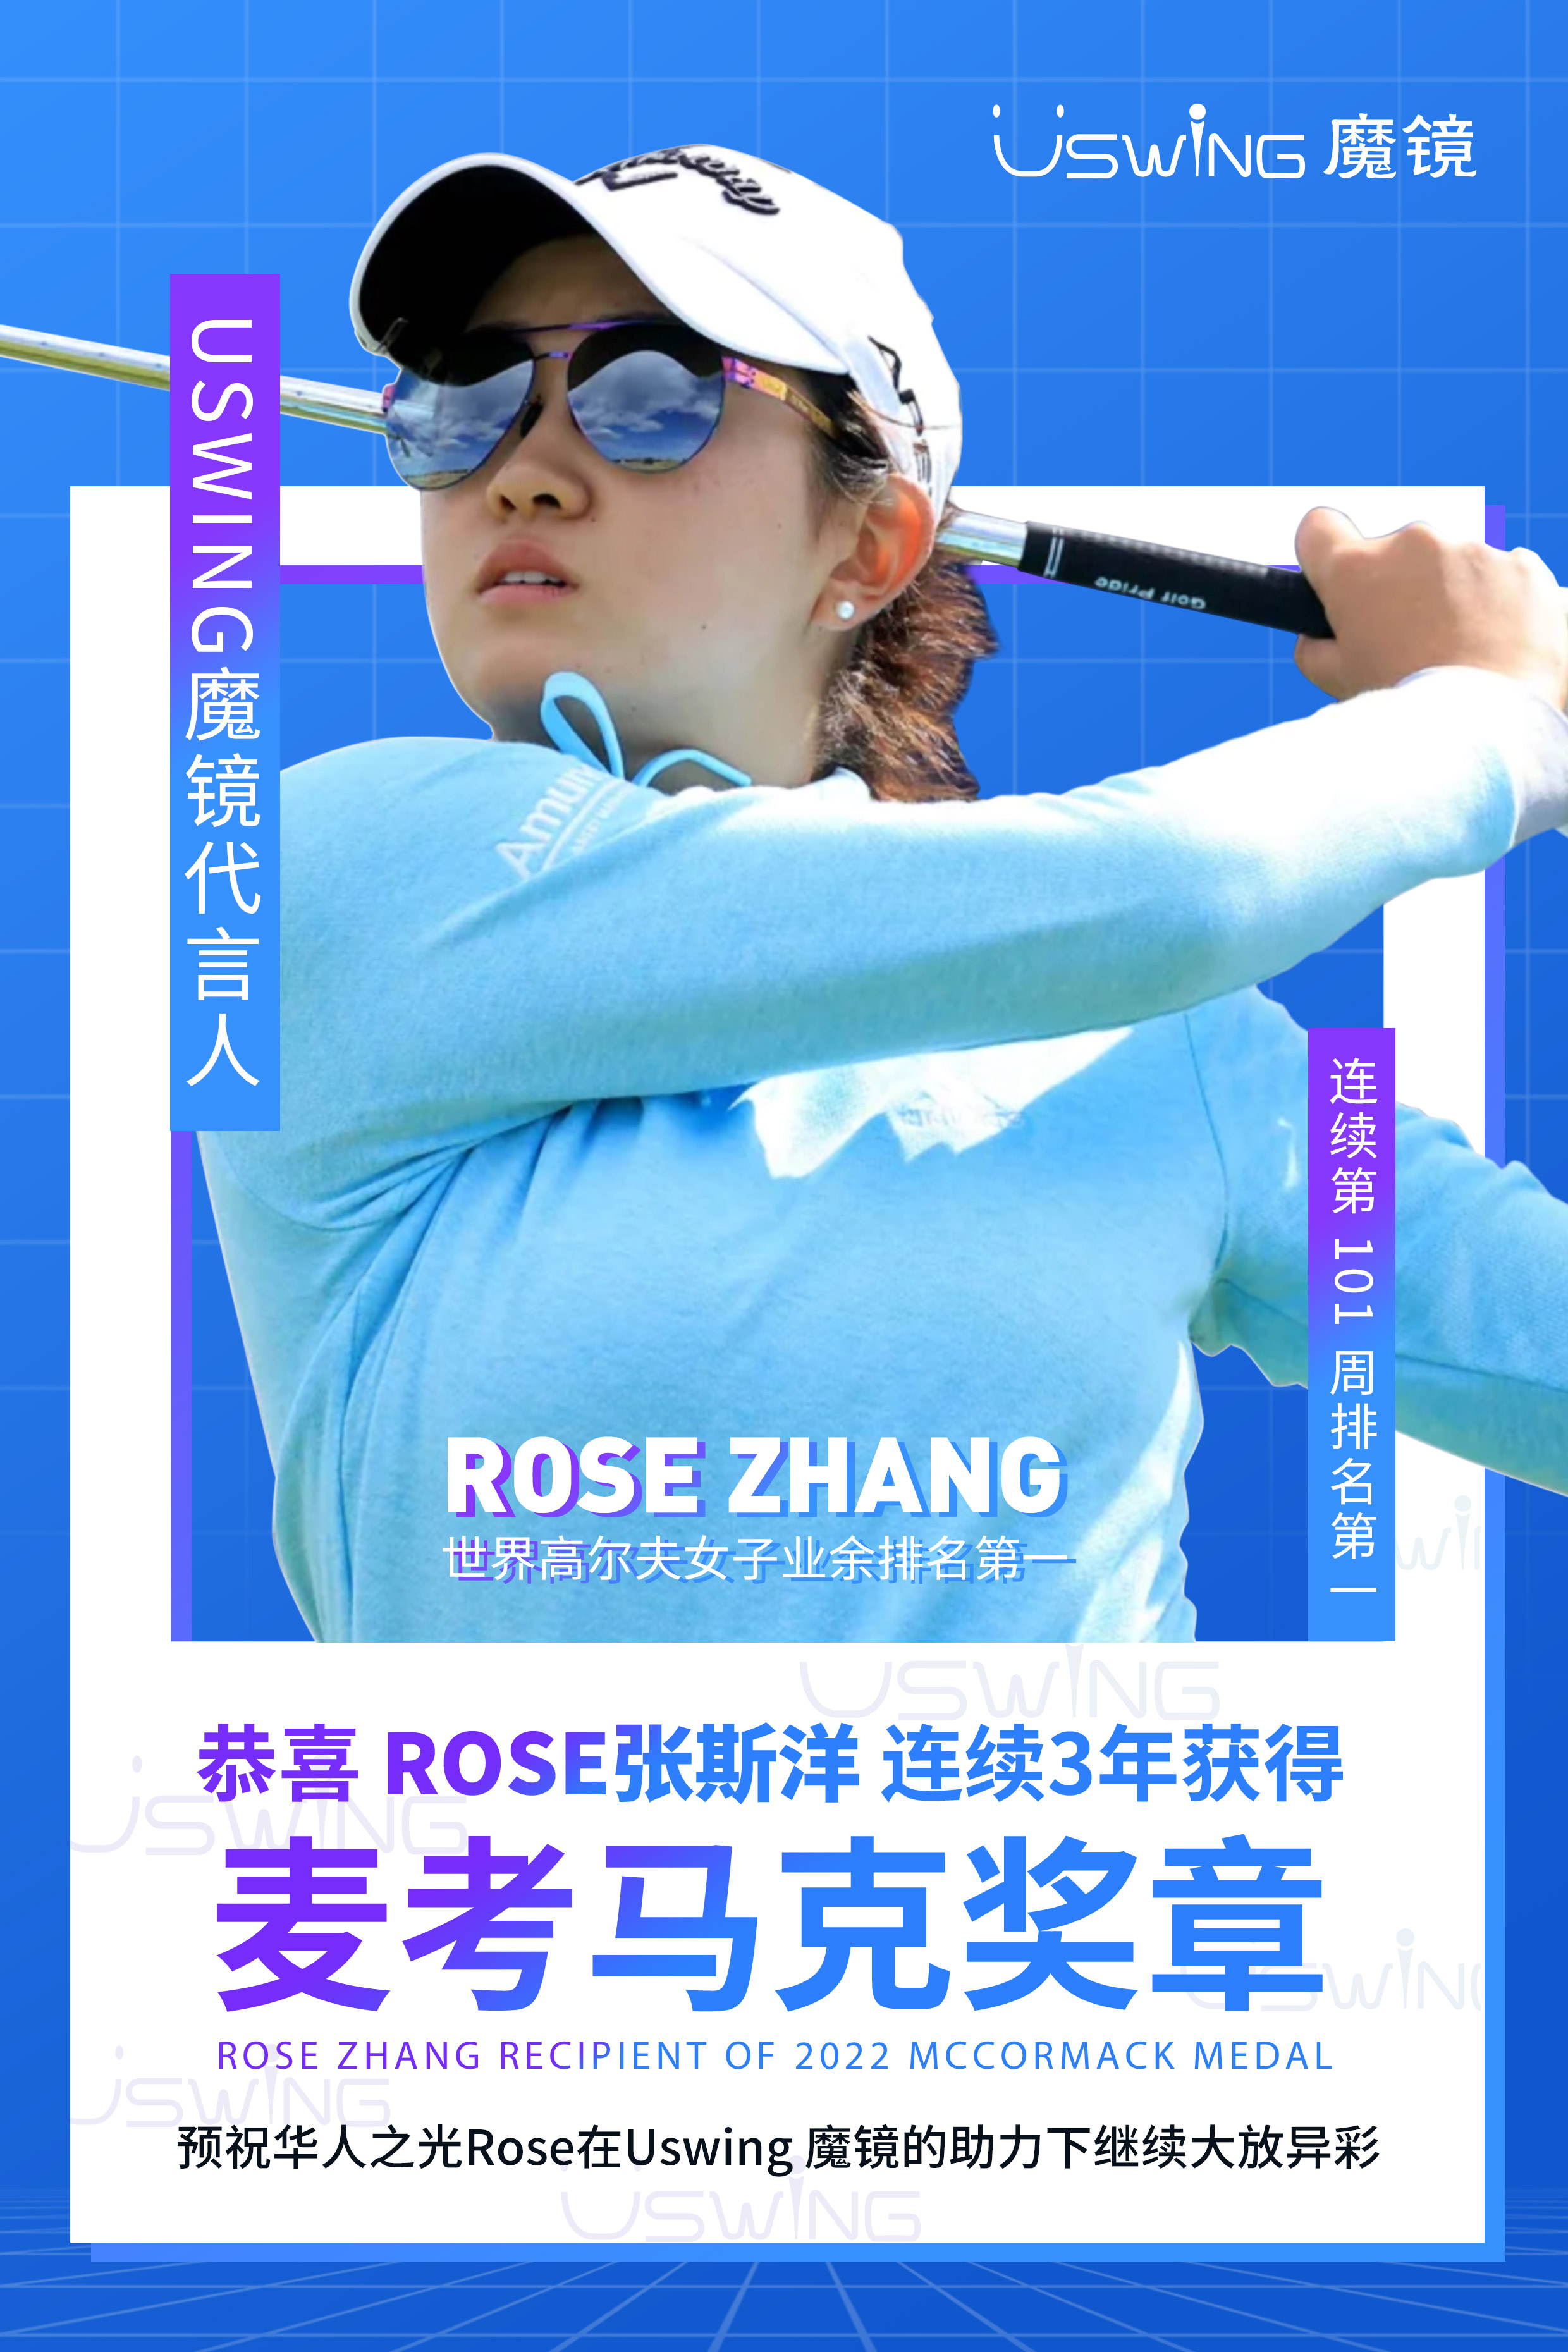 恭喜Rose张连续第三年获得麦考马克奖章